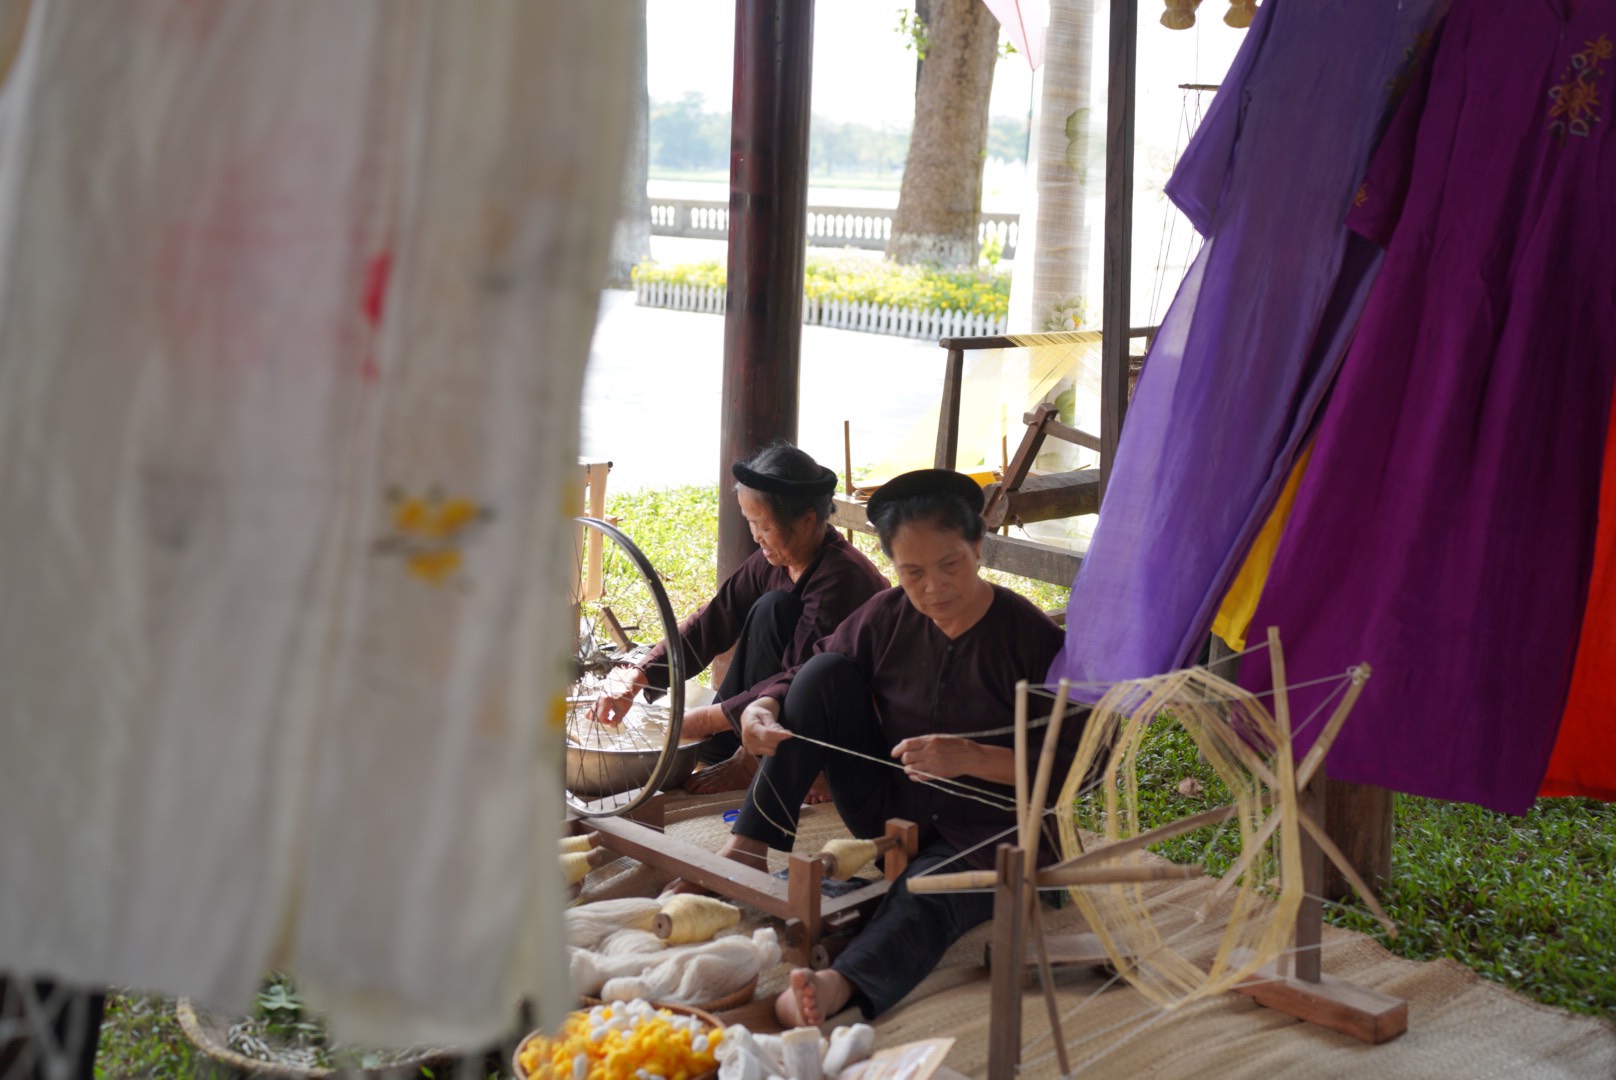 Nghệ nhân làng lụa Vạn Phúc trình diễn nghề dệt lụa